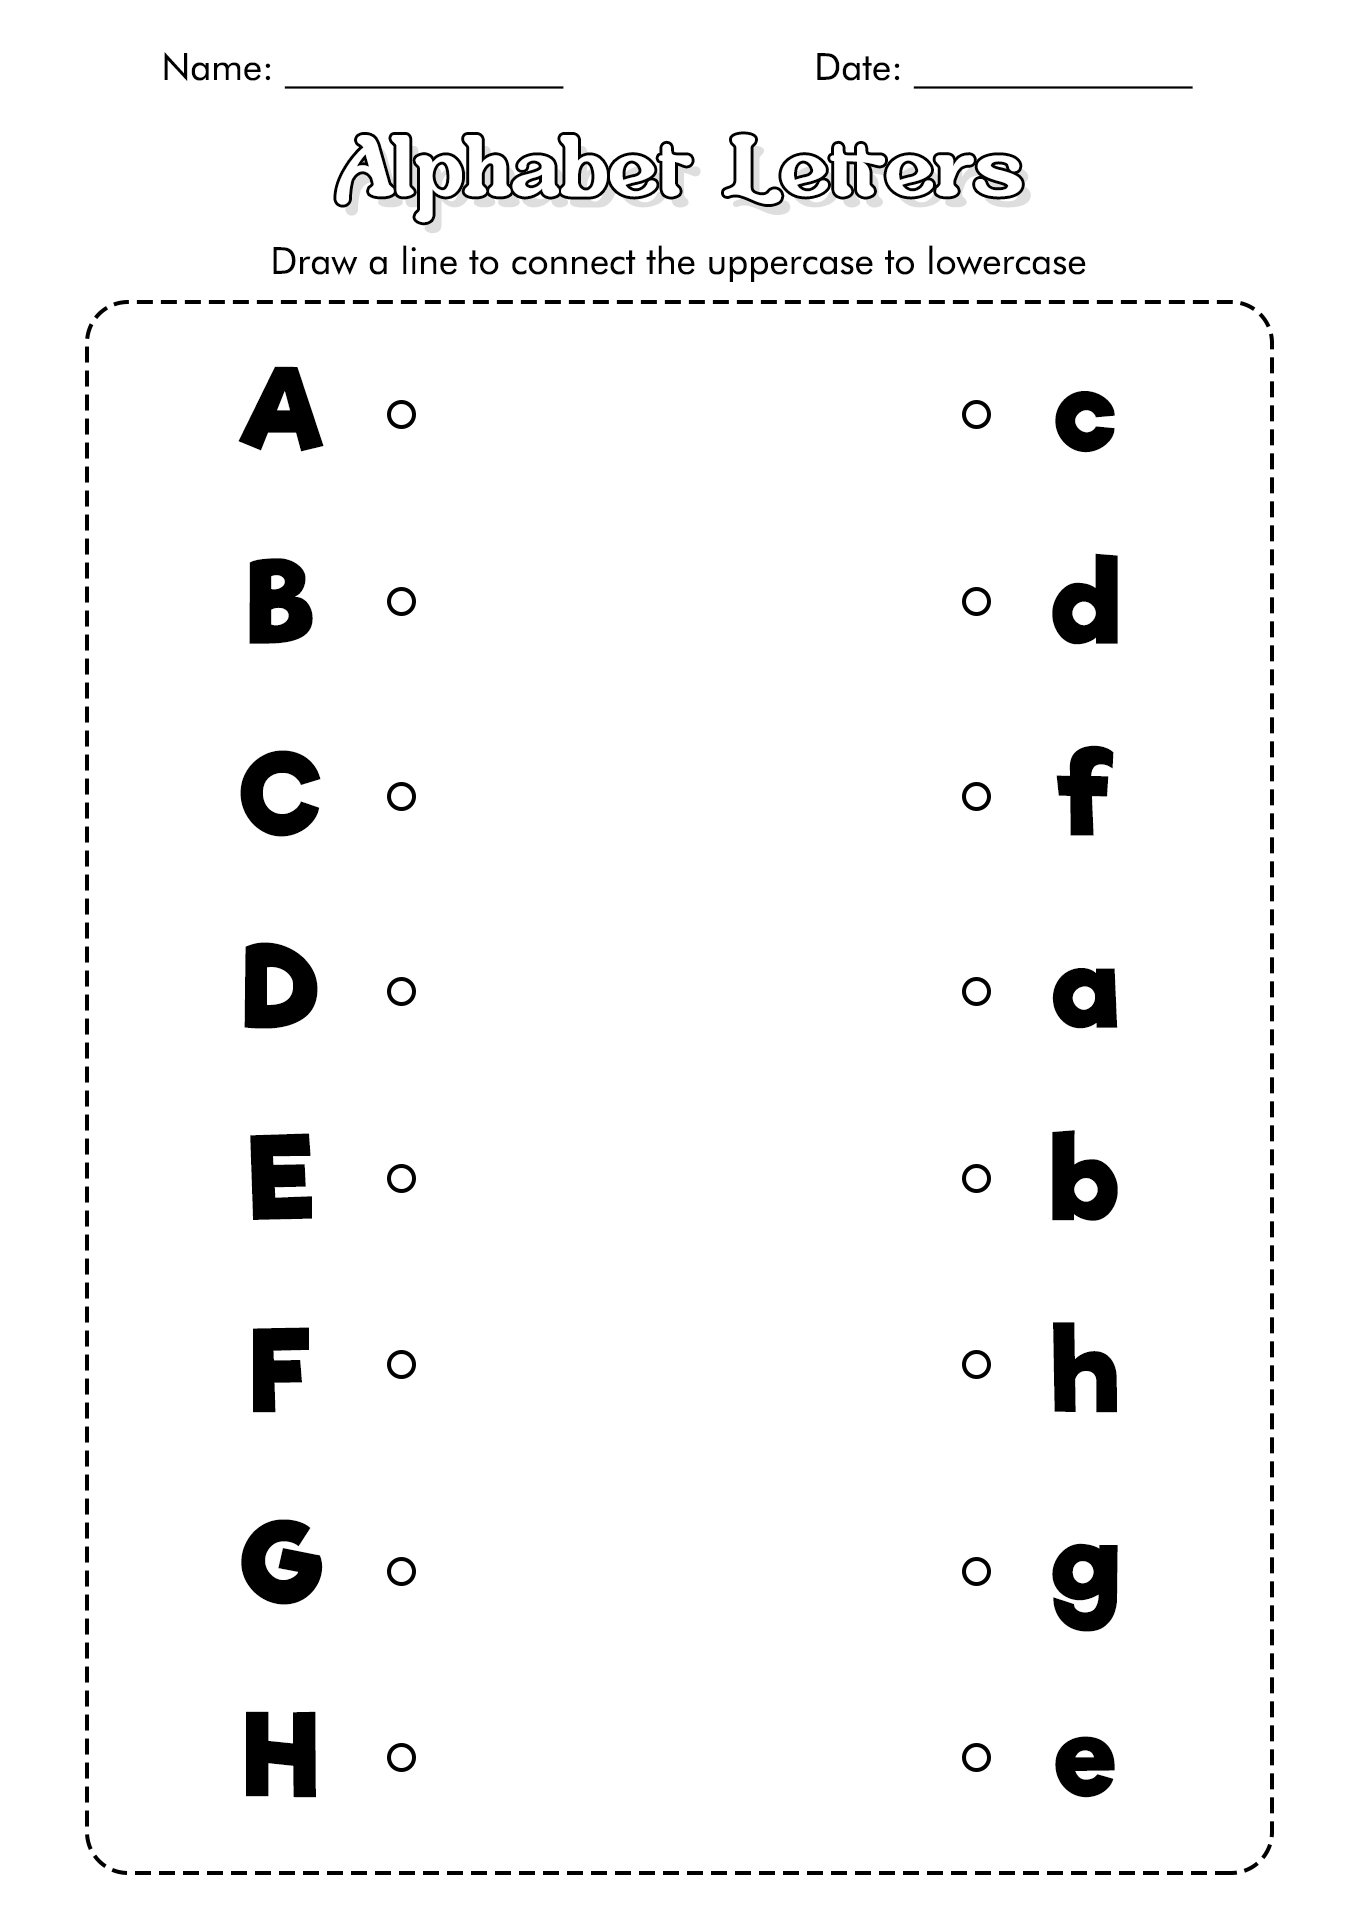 16-best-images-of-letter-recognition-assessment-worksheet-alphabet